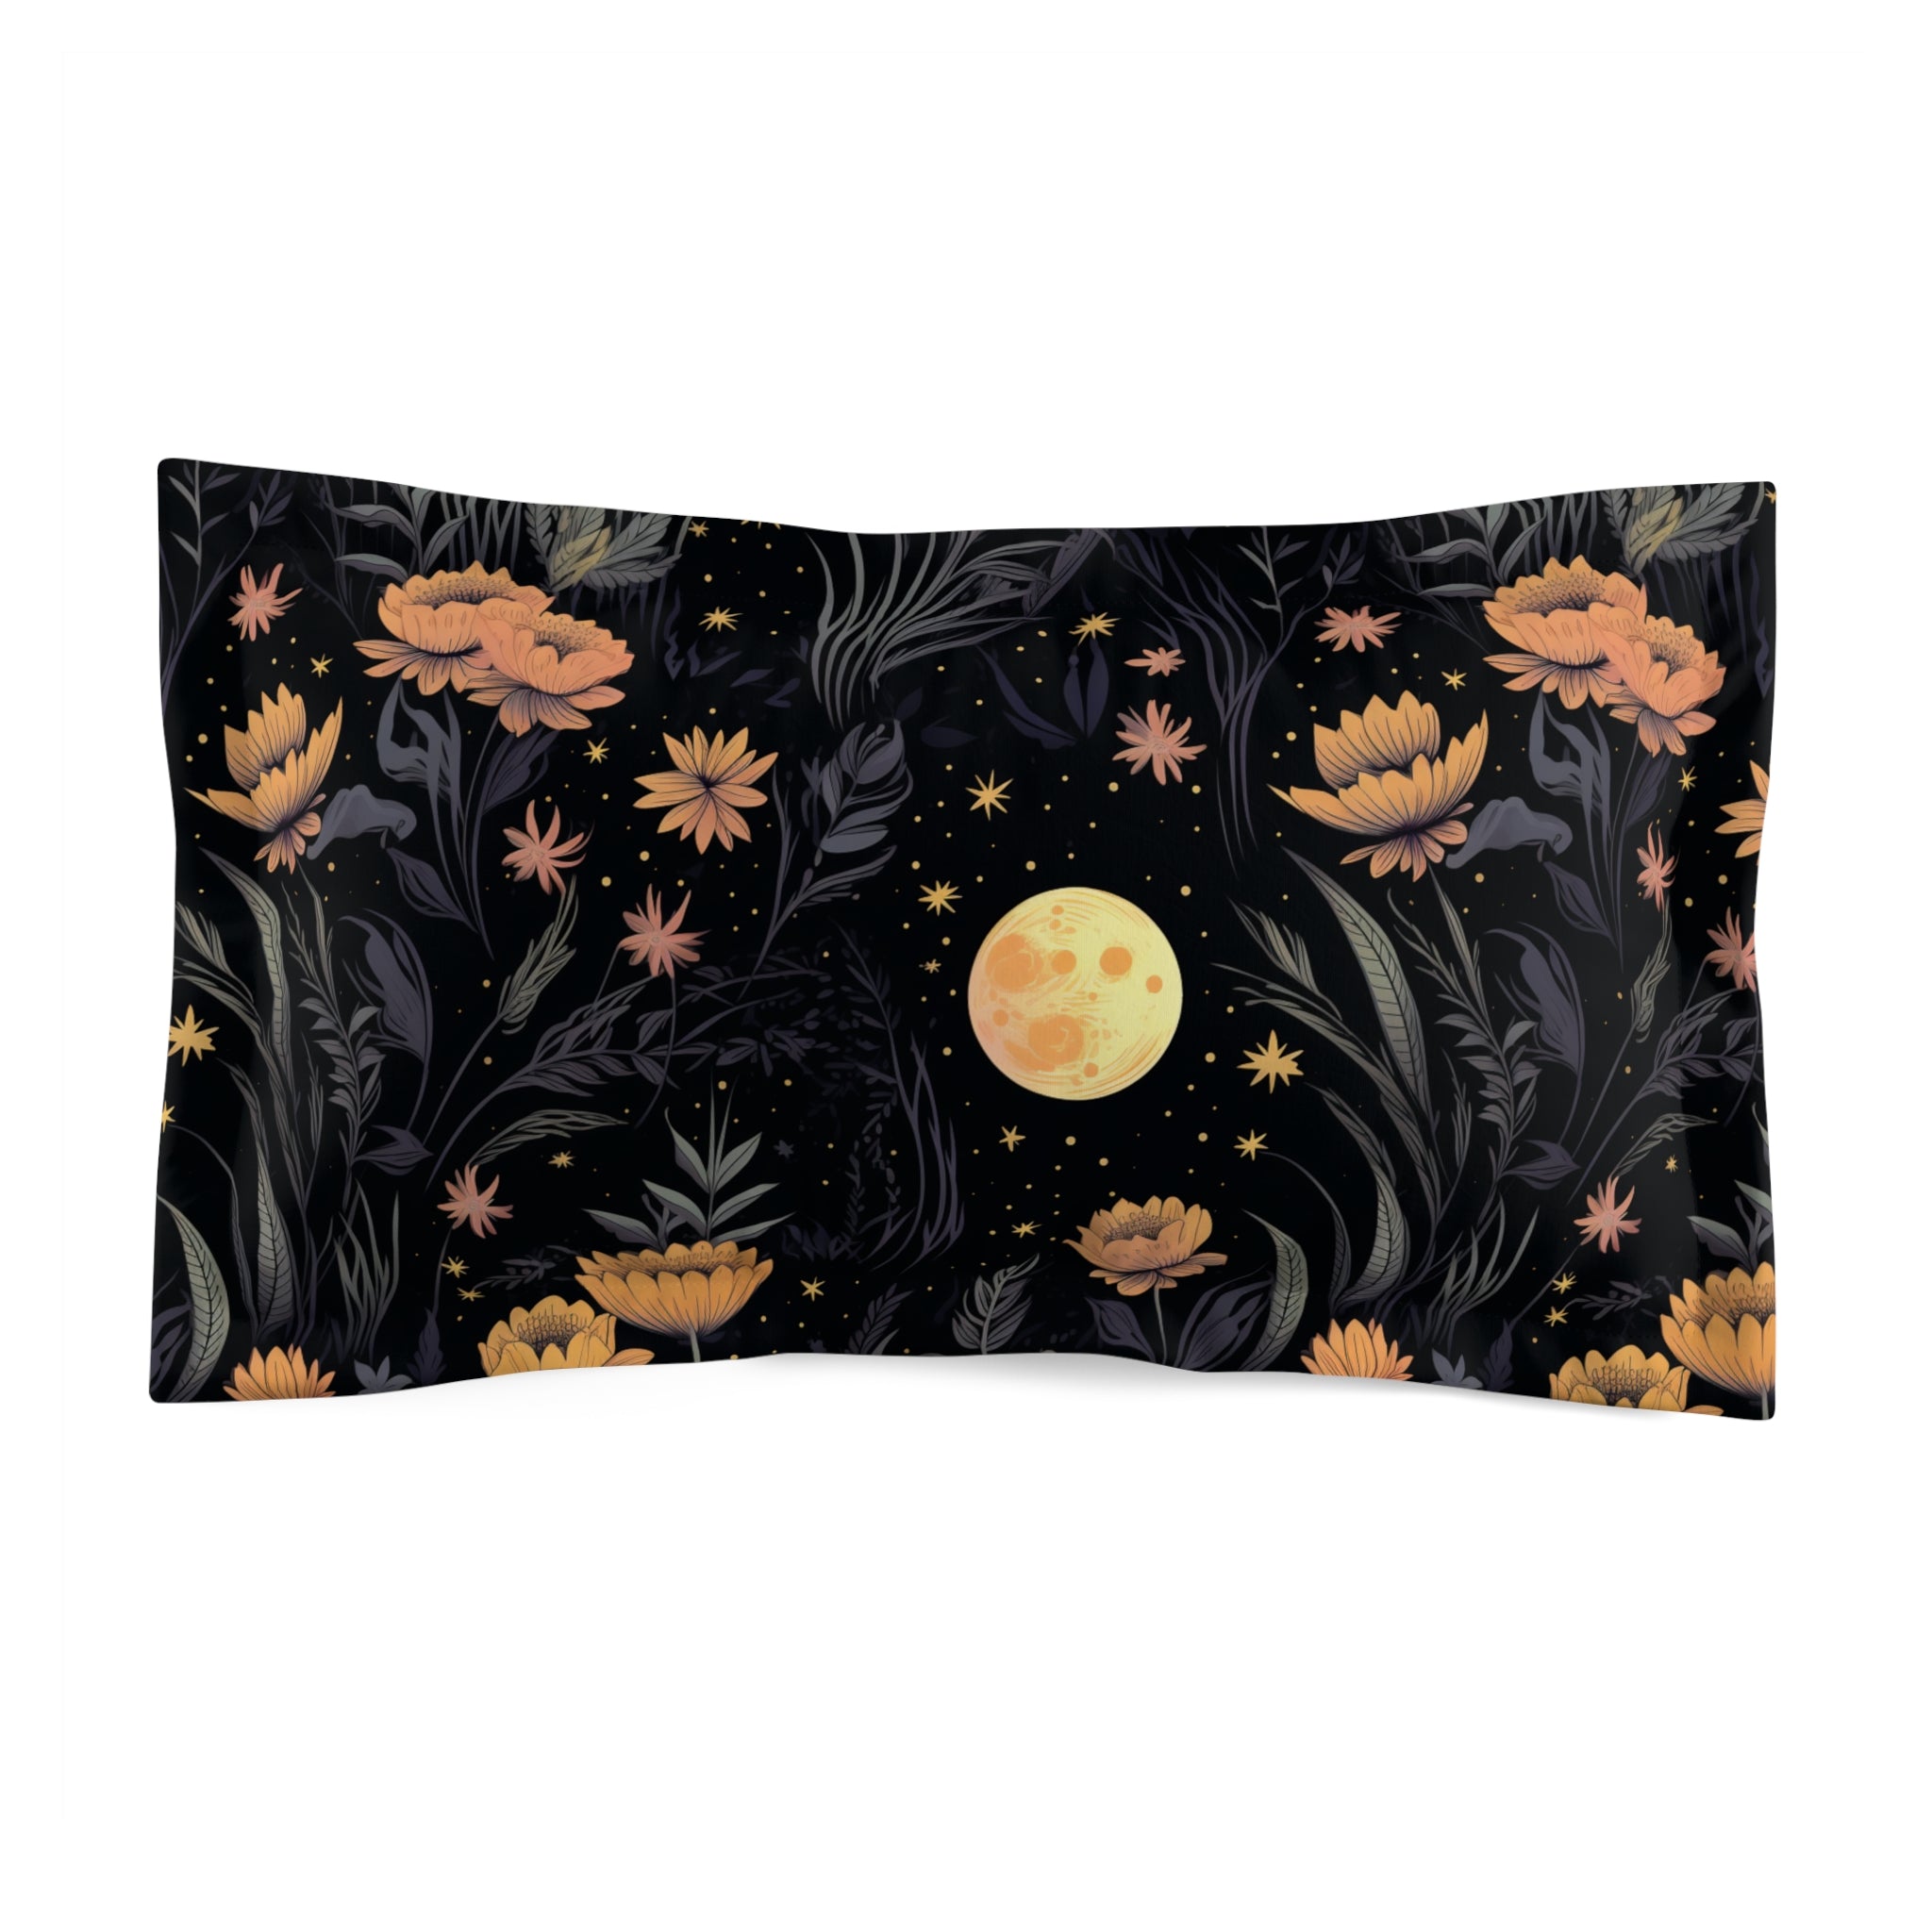 Garden of Shadows Floral Duvet Cover Set with Pillow Shams, Microfiber